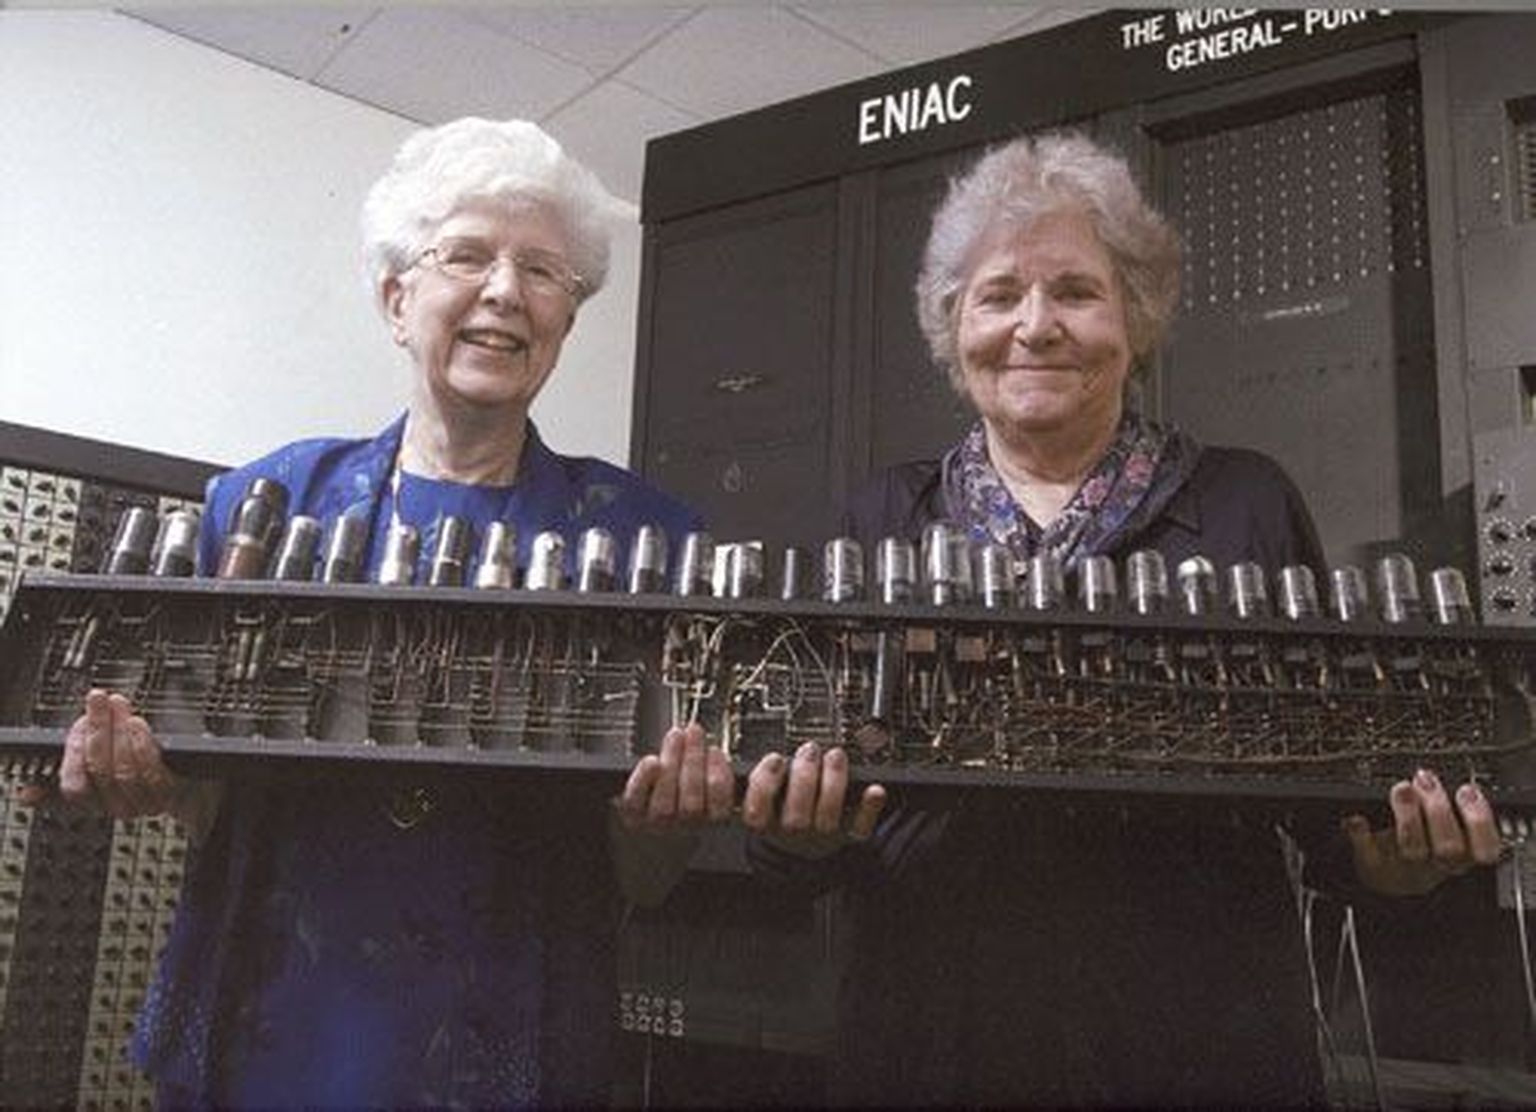 ENIACi loojad Kay McNulty Mauchly Antonelli ja Jean Jennings Bartik hoidmas aastakümneid hiljem enda kätes väikest osa maailma esimesest üldotstarbelisest arvutist.